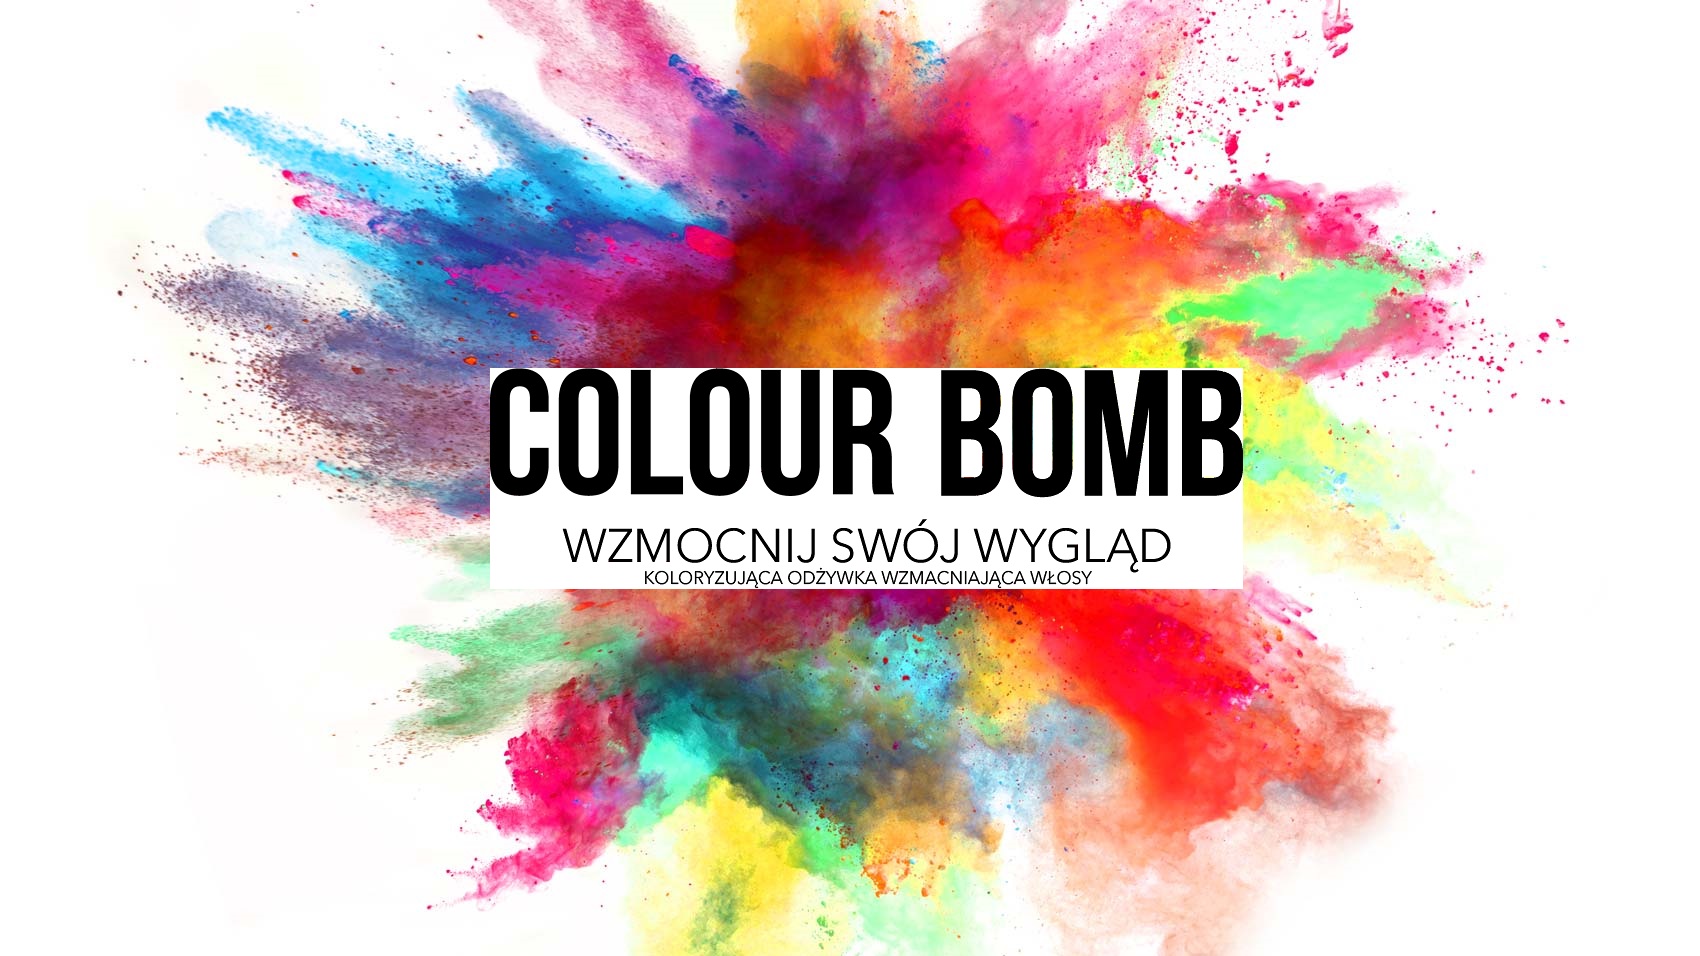 colour bomb hair dye review